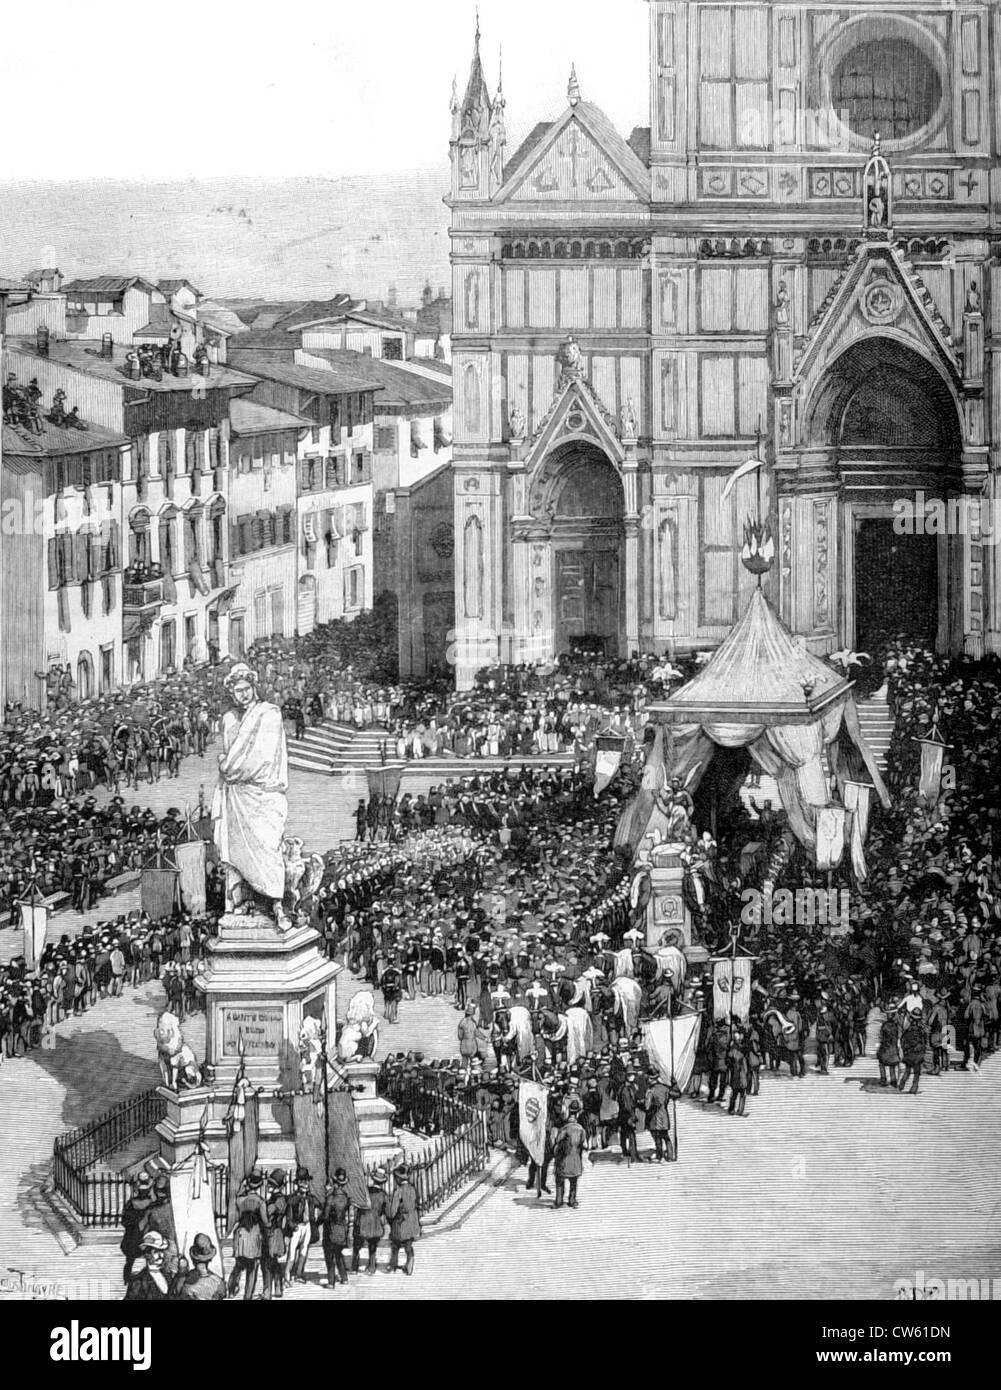 Florence, transfert des cendres de Rossini à l'église de Santa Croce, dans "Le Monde illustré" du 28 mai, 1887 Banque D'Images